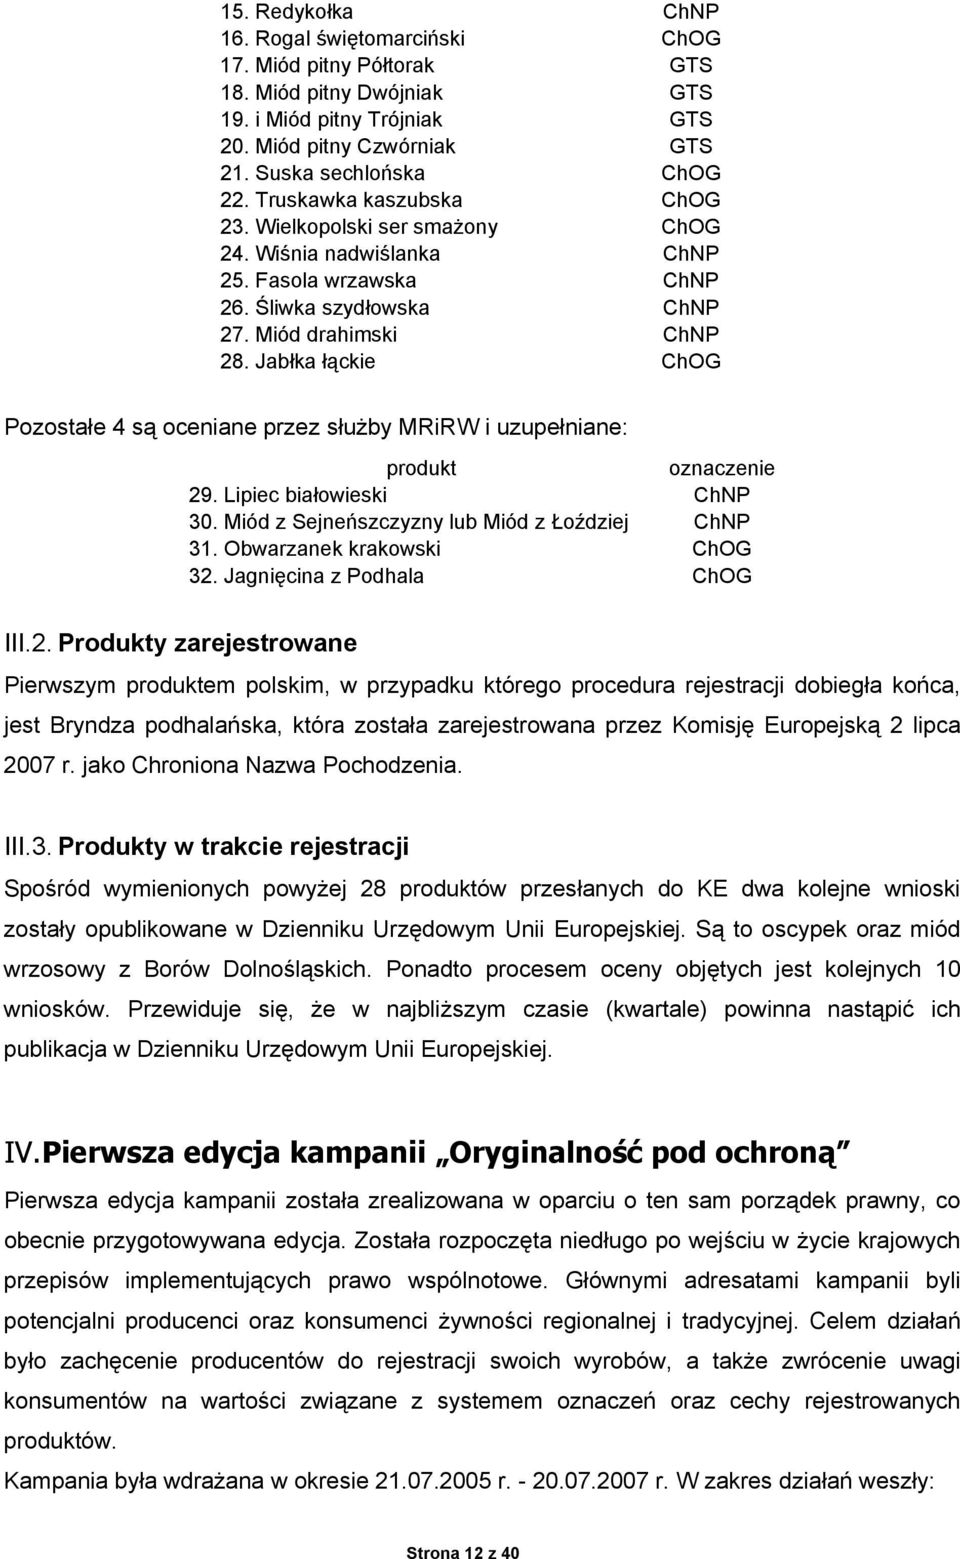 Jabłka łąckie ChOG Pozostałe 4 są oceniane przez służby MRiRW i uzupełniane: produkt oznaczenie 29. Lipiec białowieski ChNP 30. Miód z Sejneńszczyzny lub Miód z Łoździej ChNP 31.